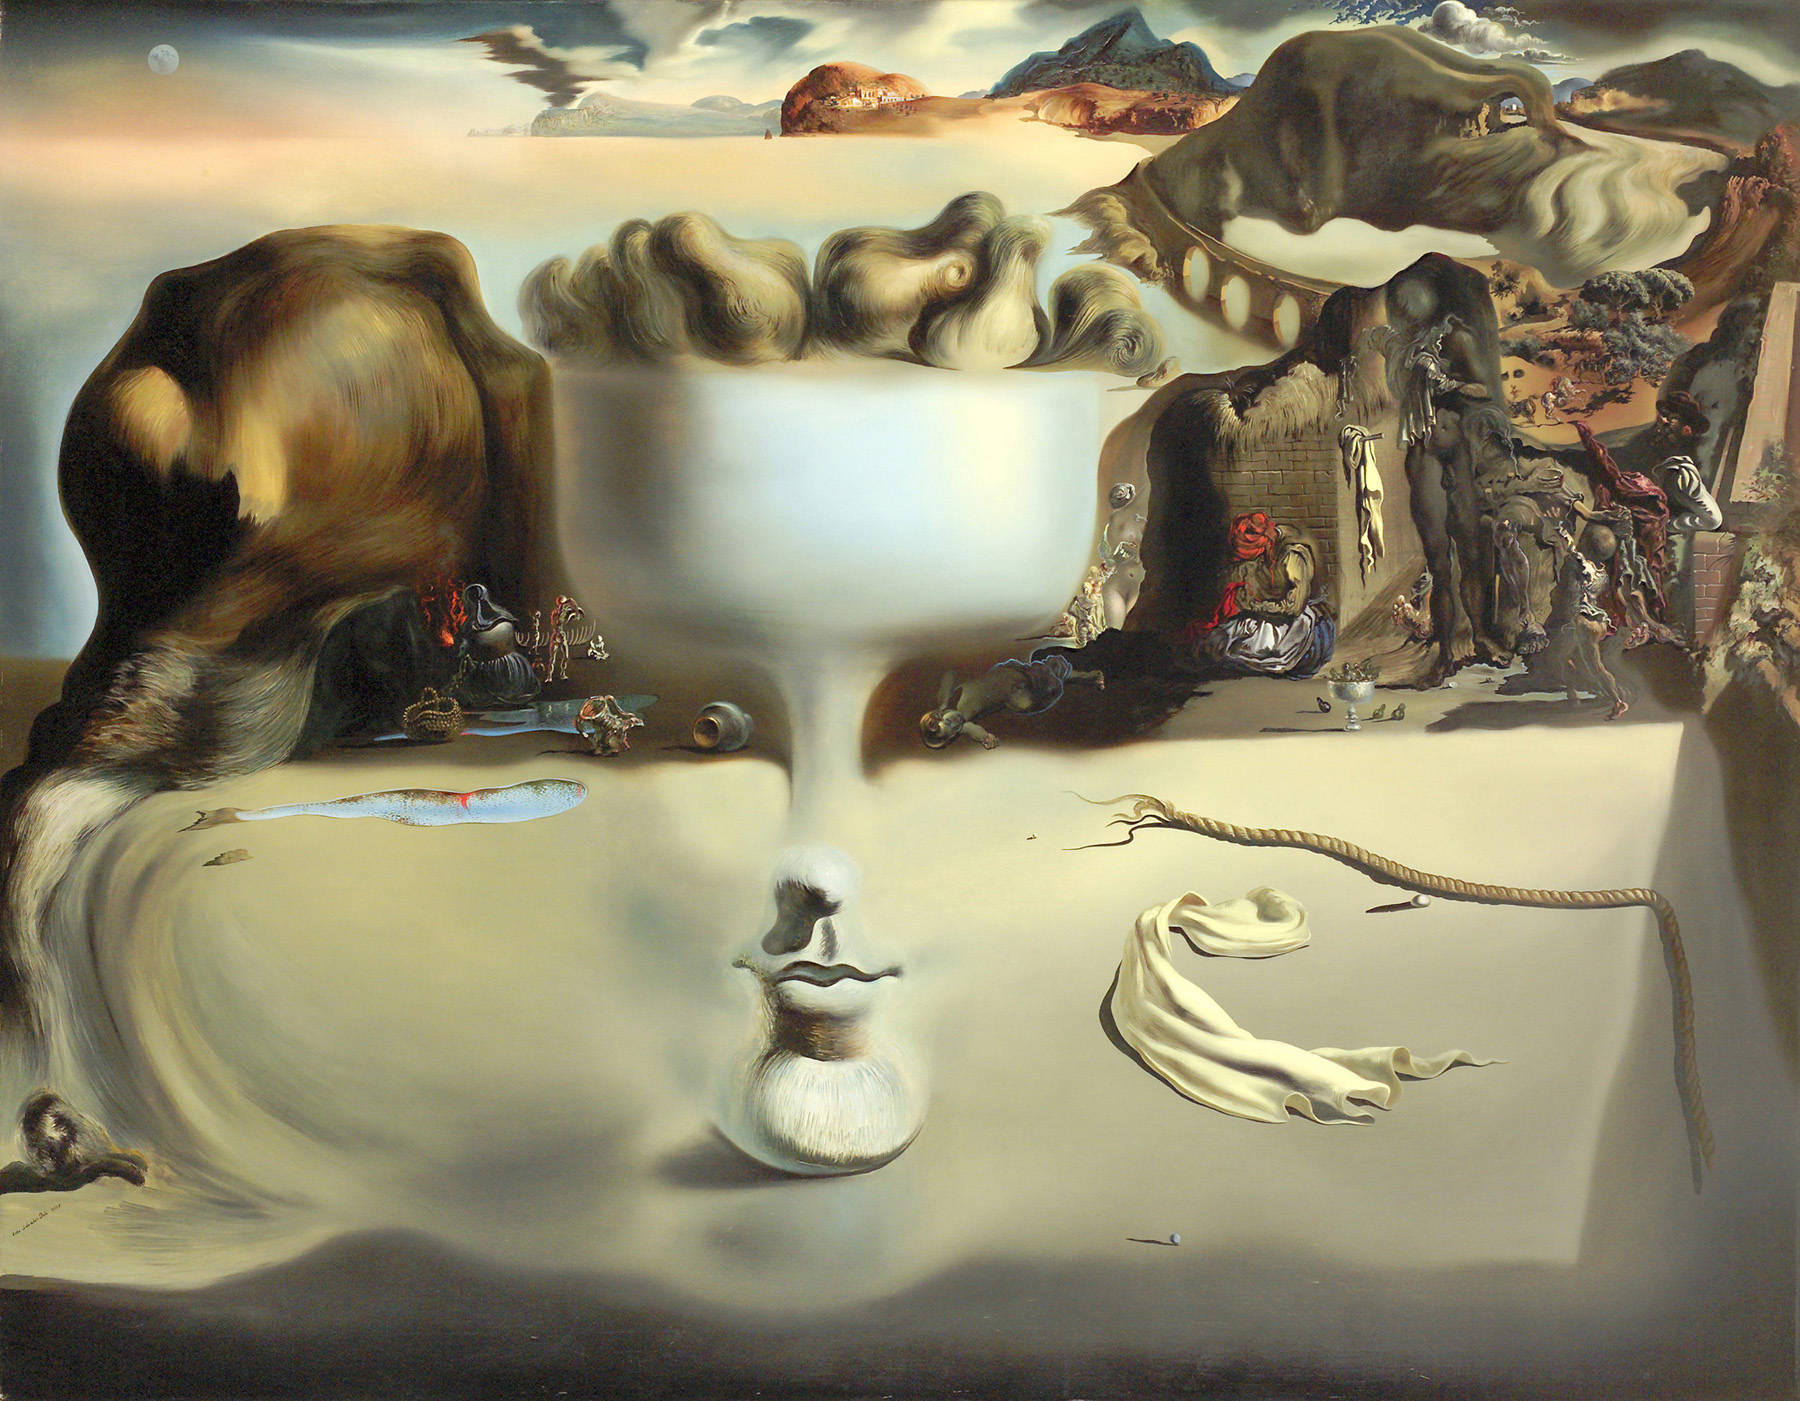 Salvador Dali-Surrealism - Art Blog For The Modern Designer : Art ...